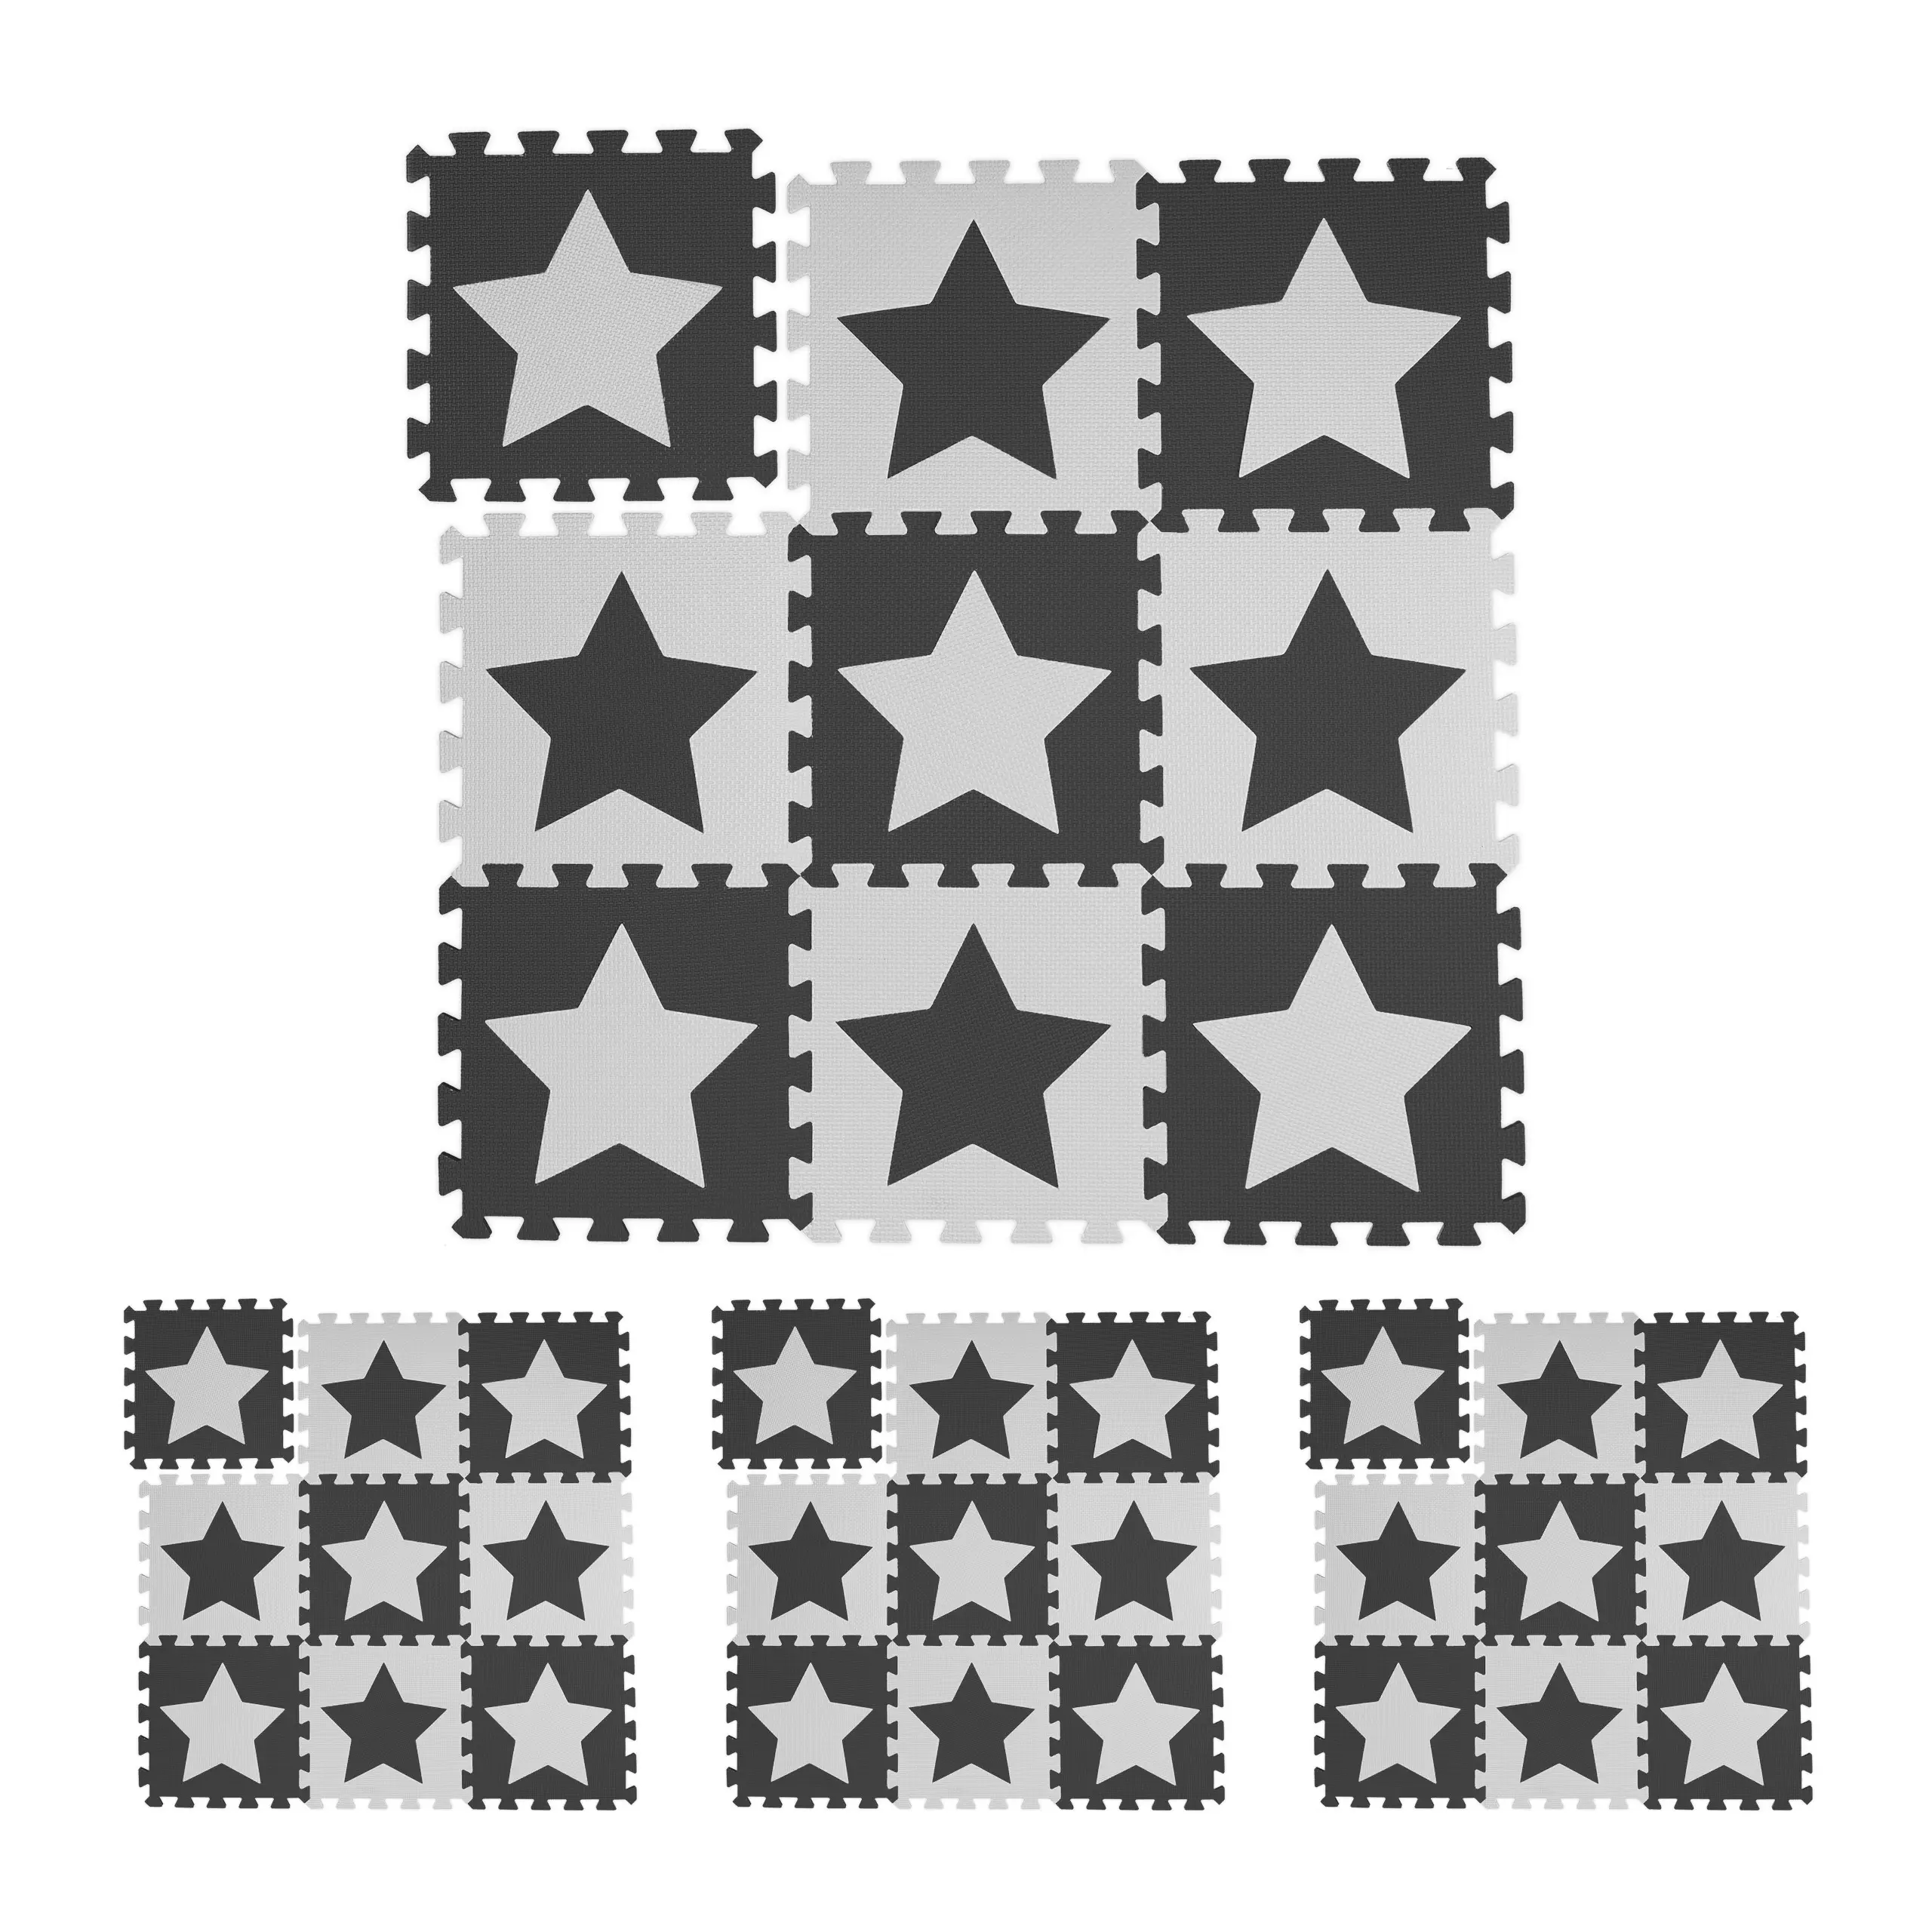 36 x Puzzlematte Sterne wei脽-grau